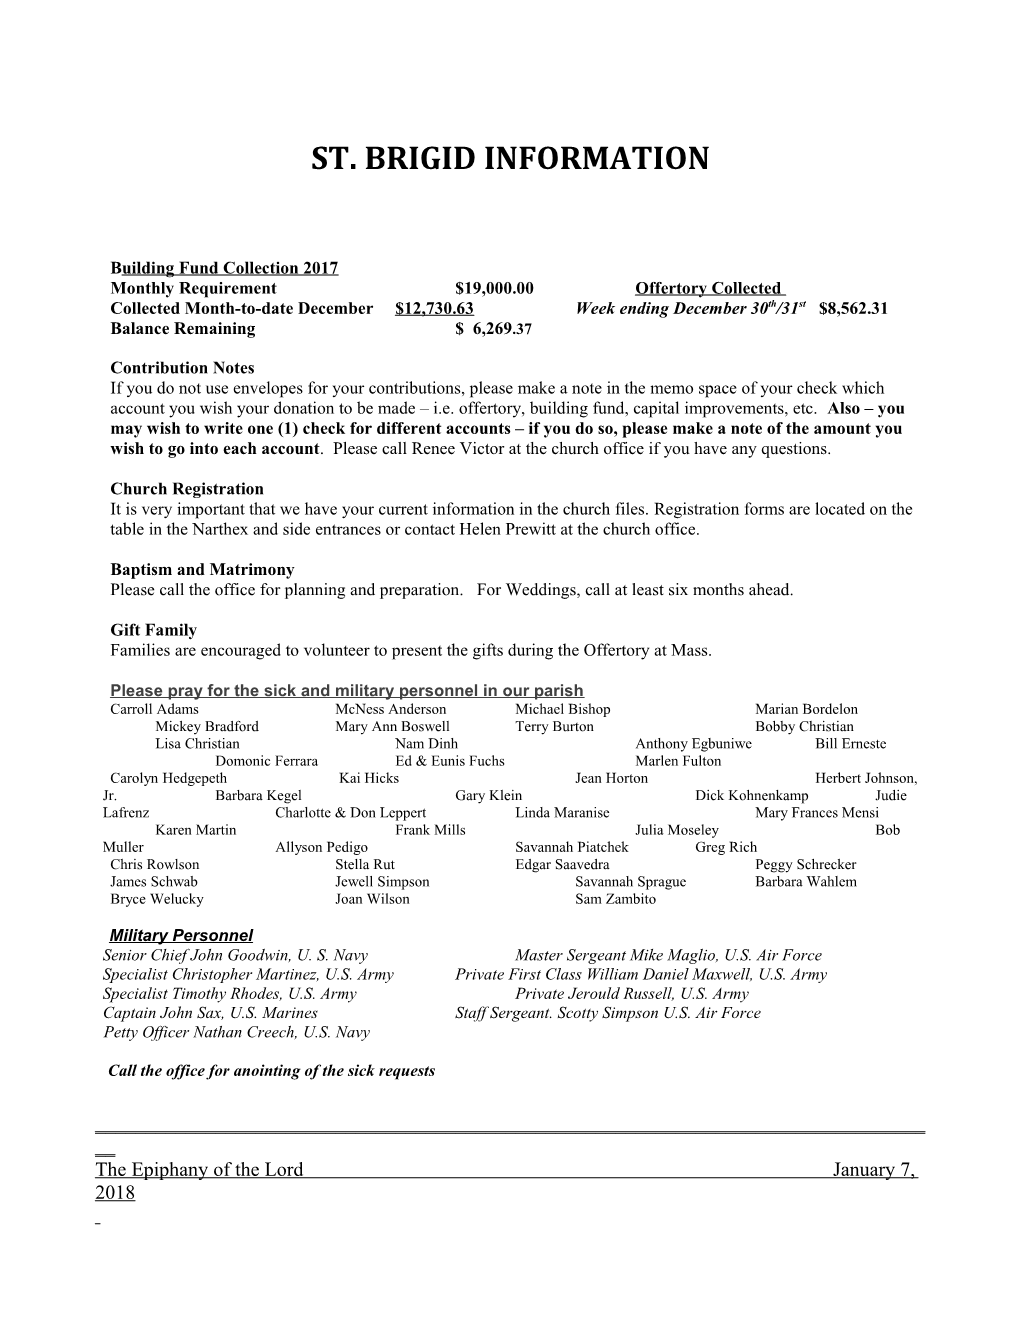 St. Brigid Information